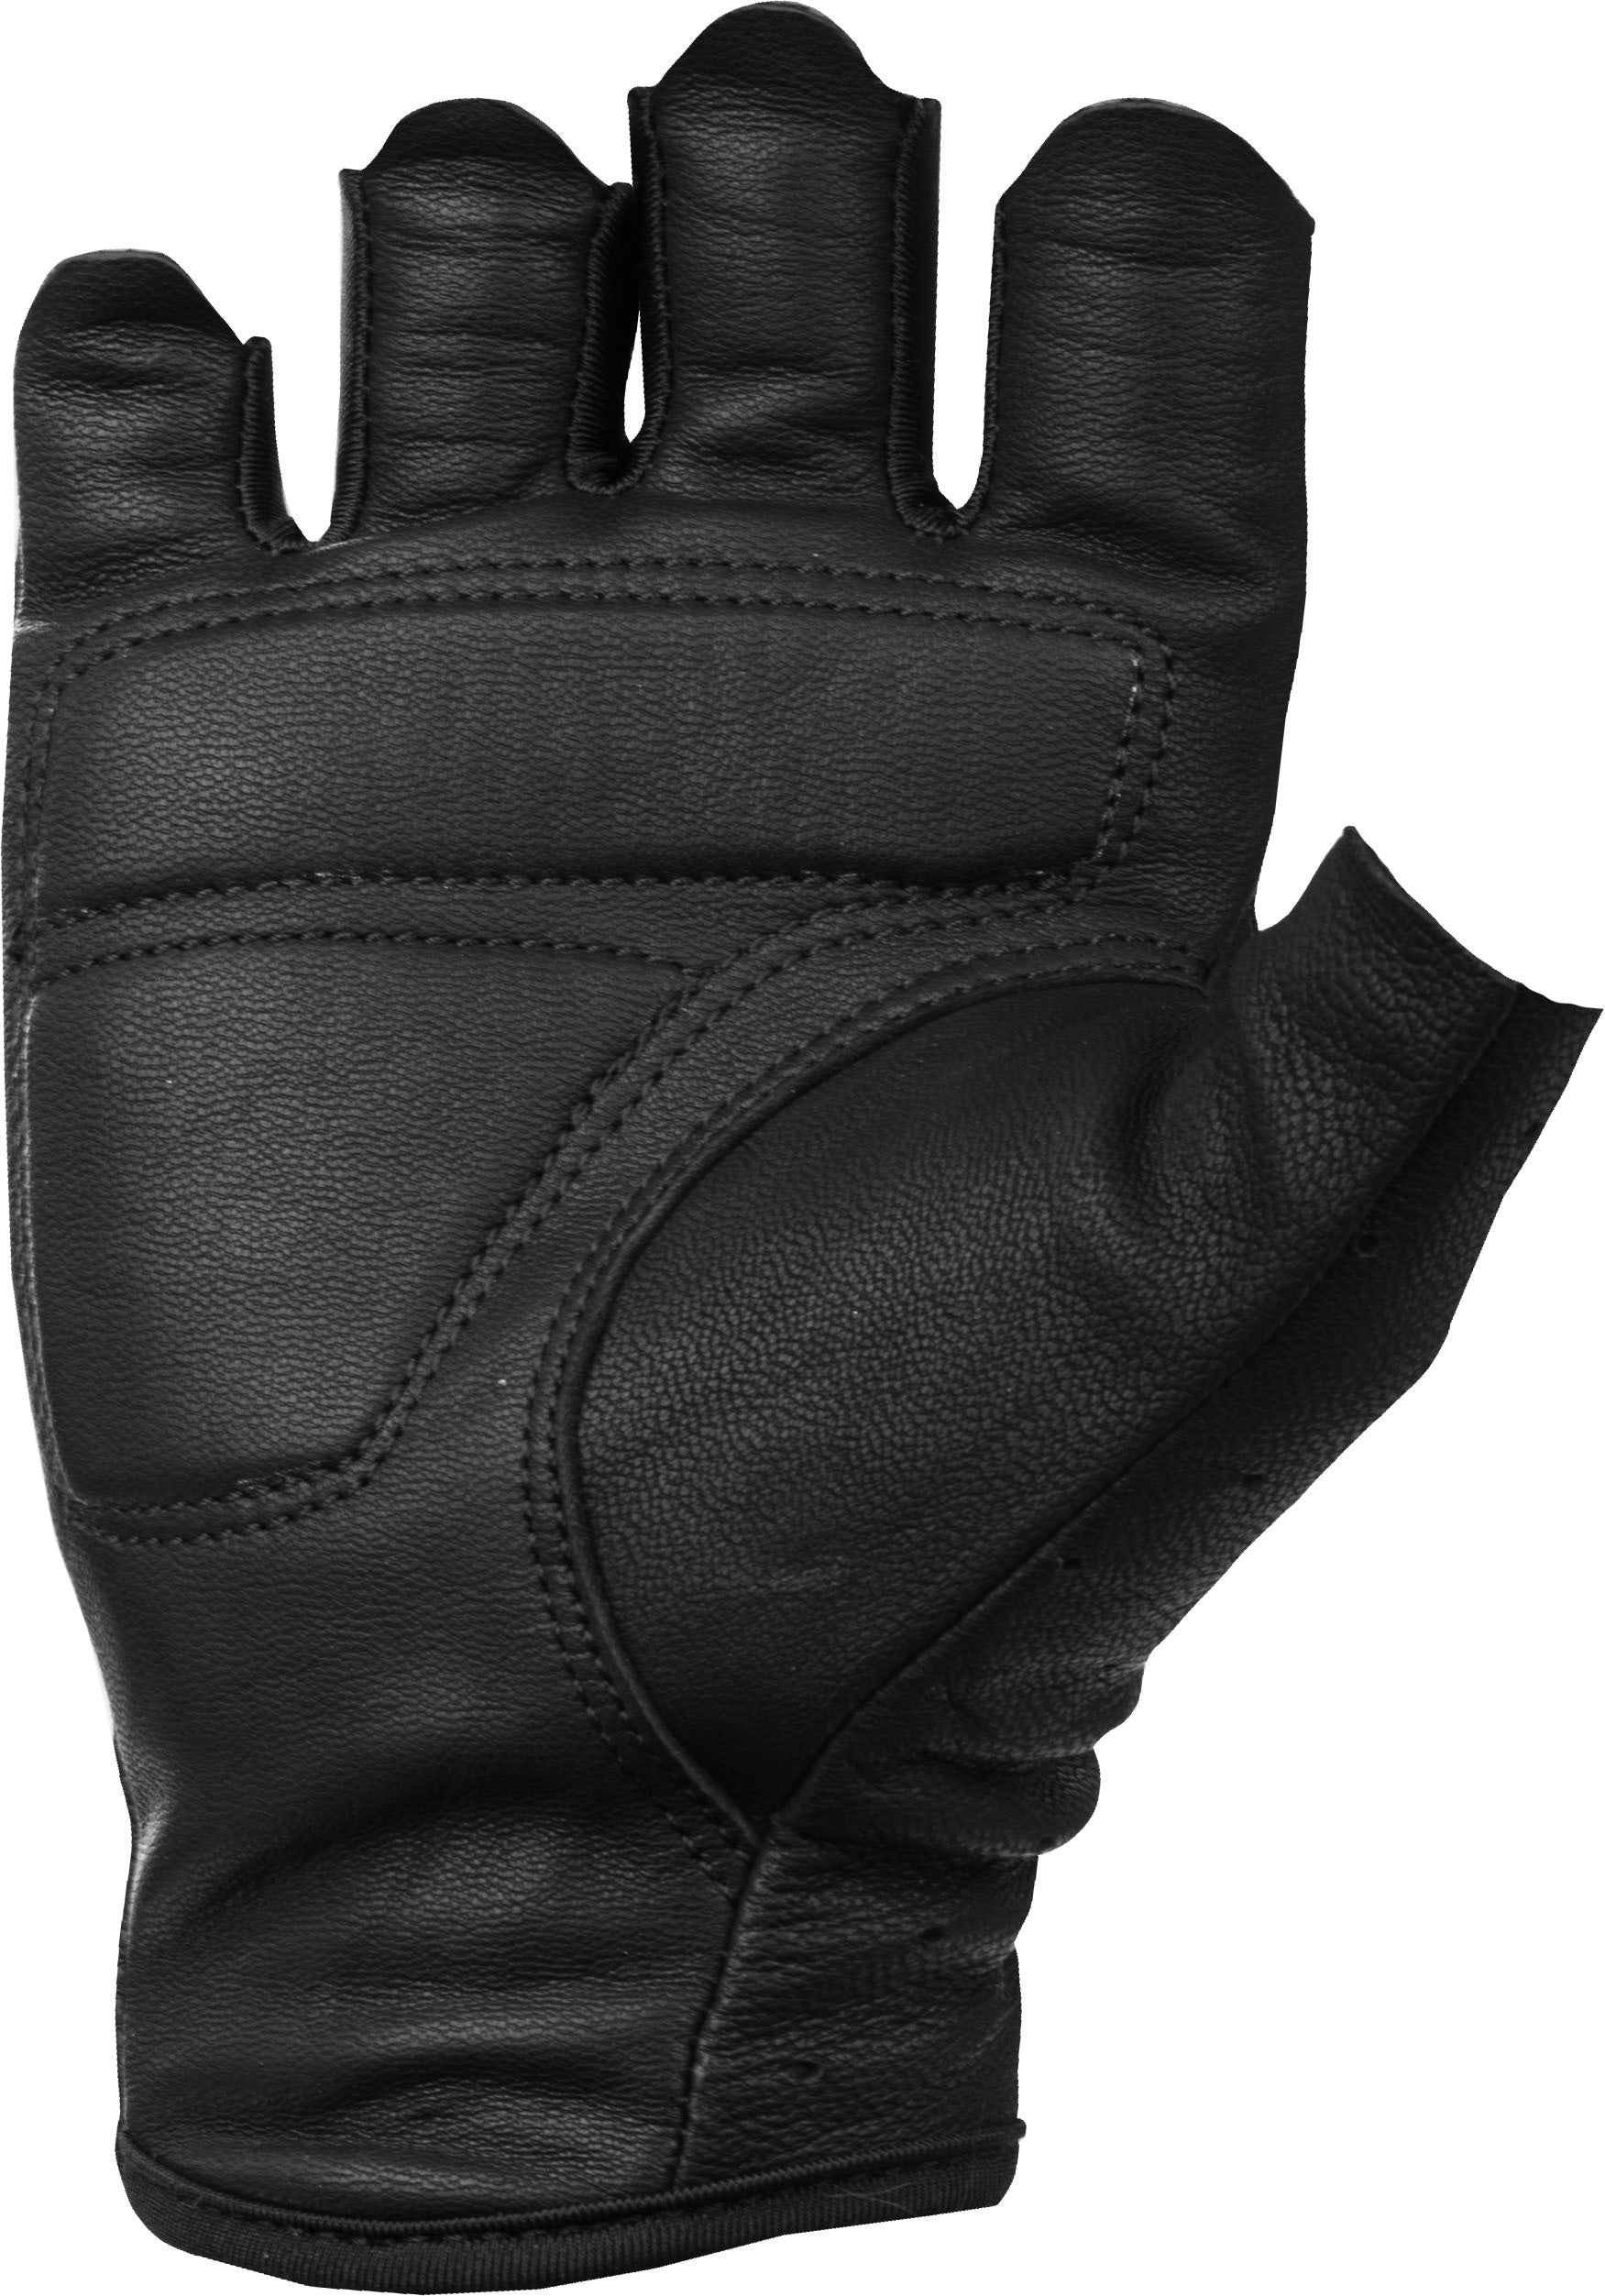 Women's Ranger Gloves Black Sm